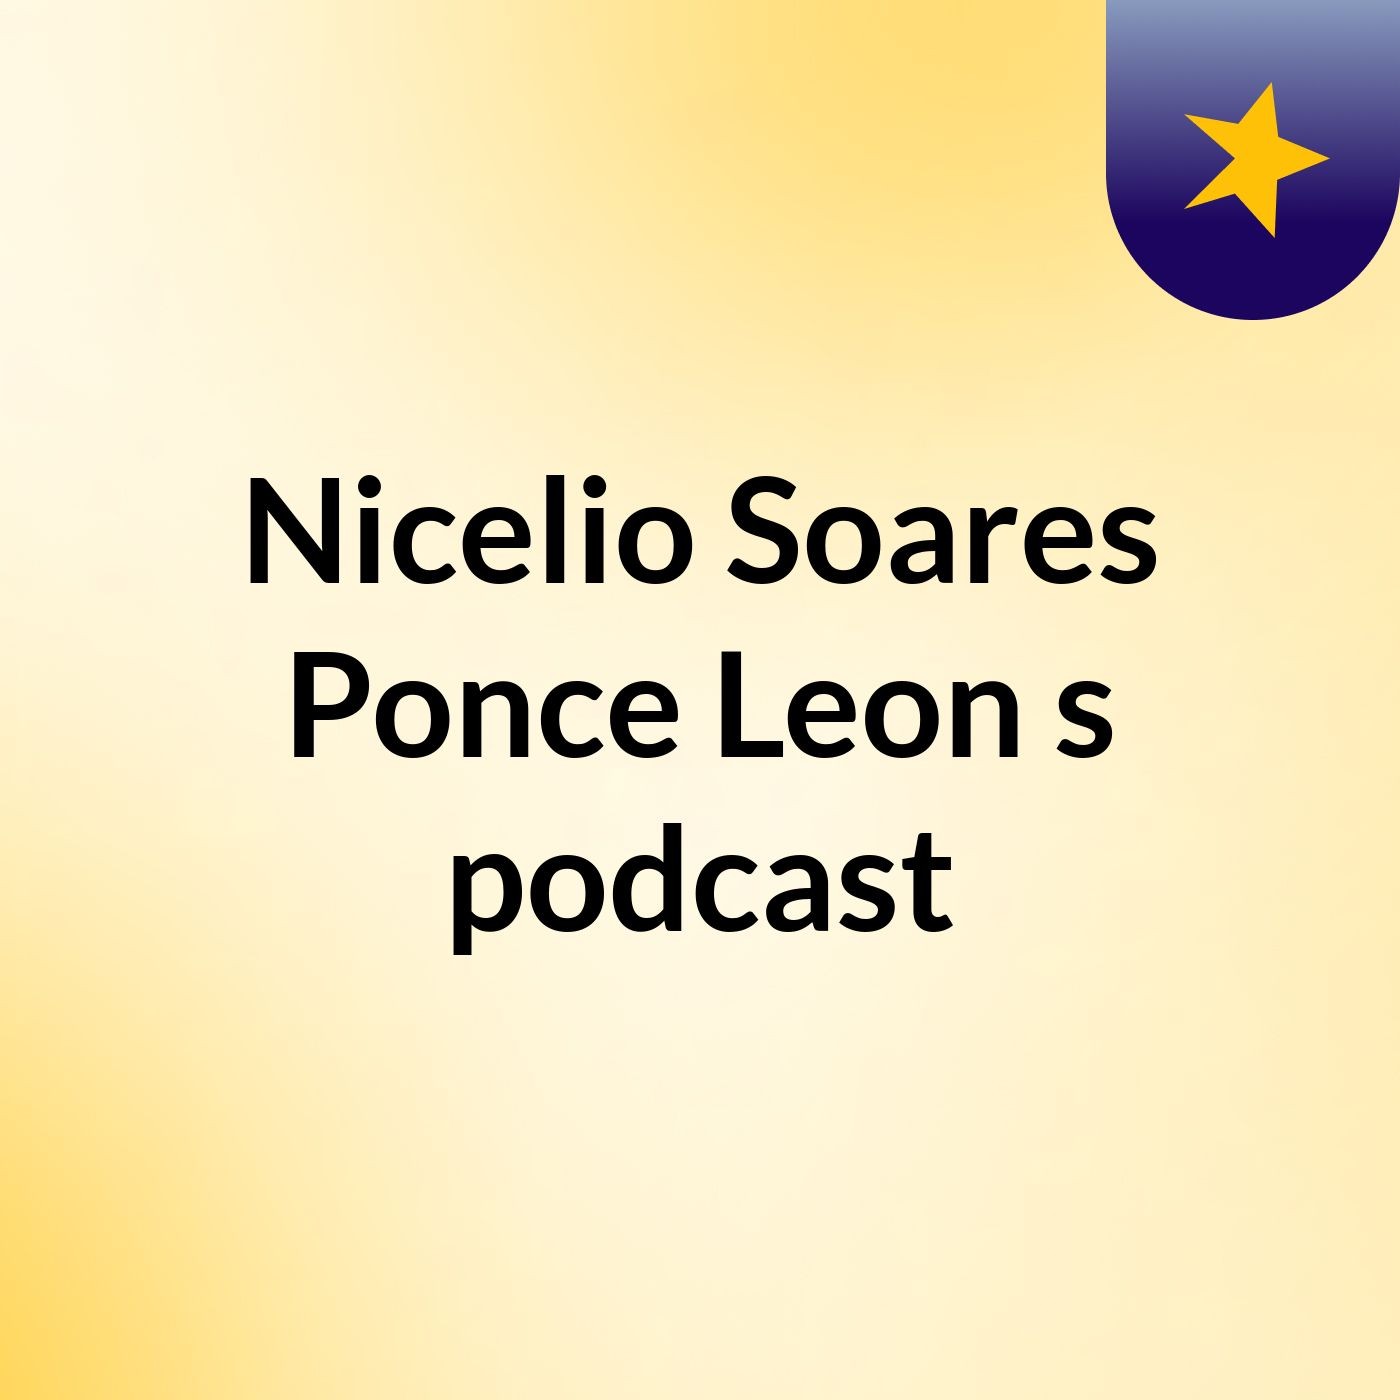 Nicelio Soares Ponce Leon's podcast